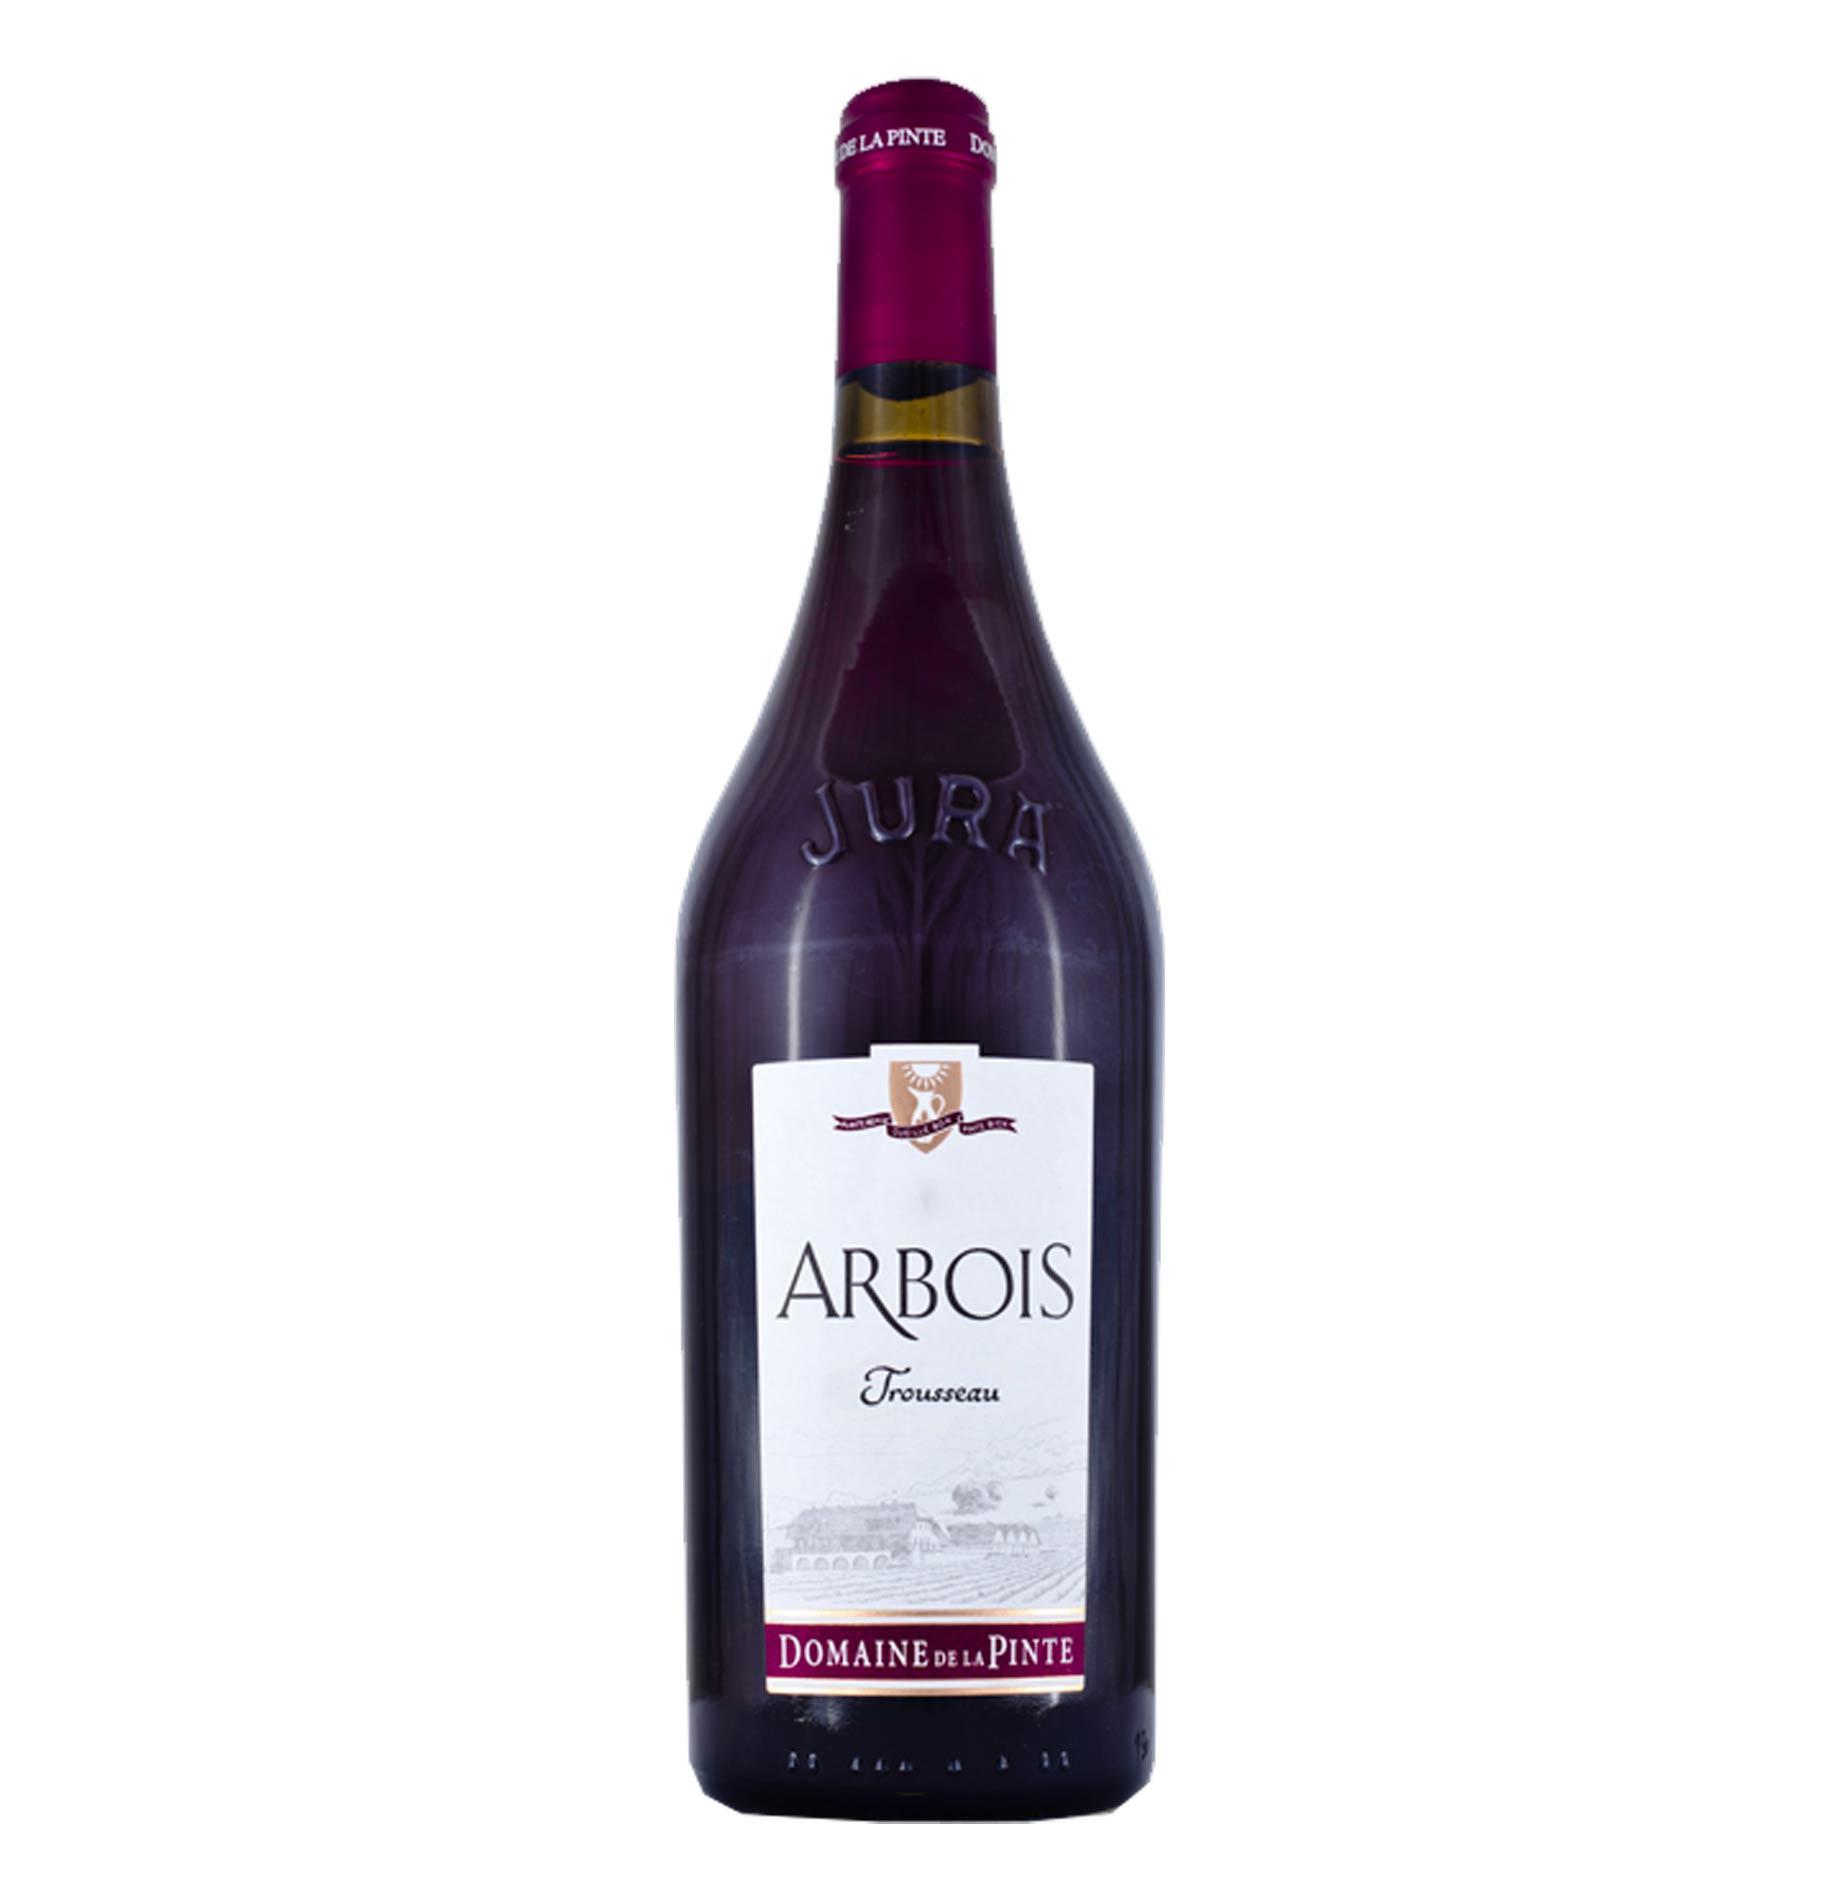 Arbois Trousseau Aoc 2020 110656 FR Tannico